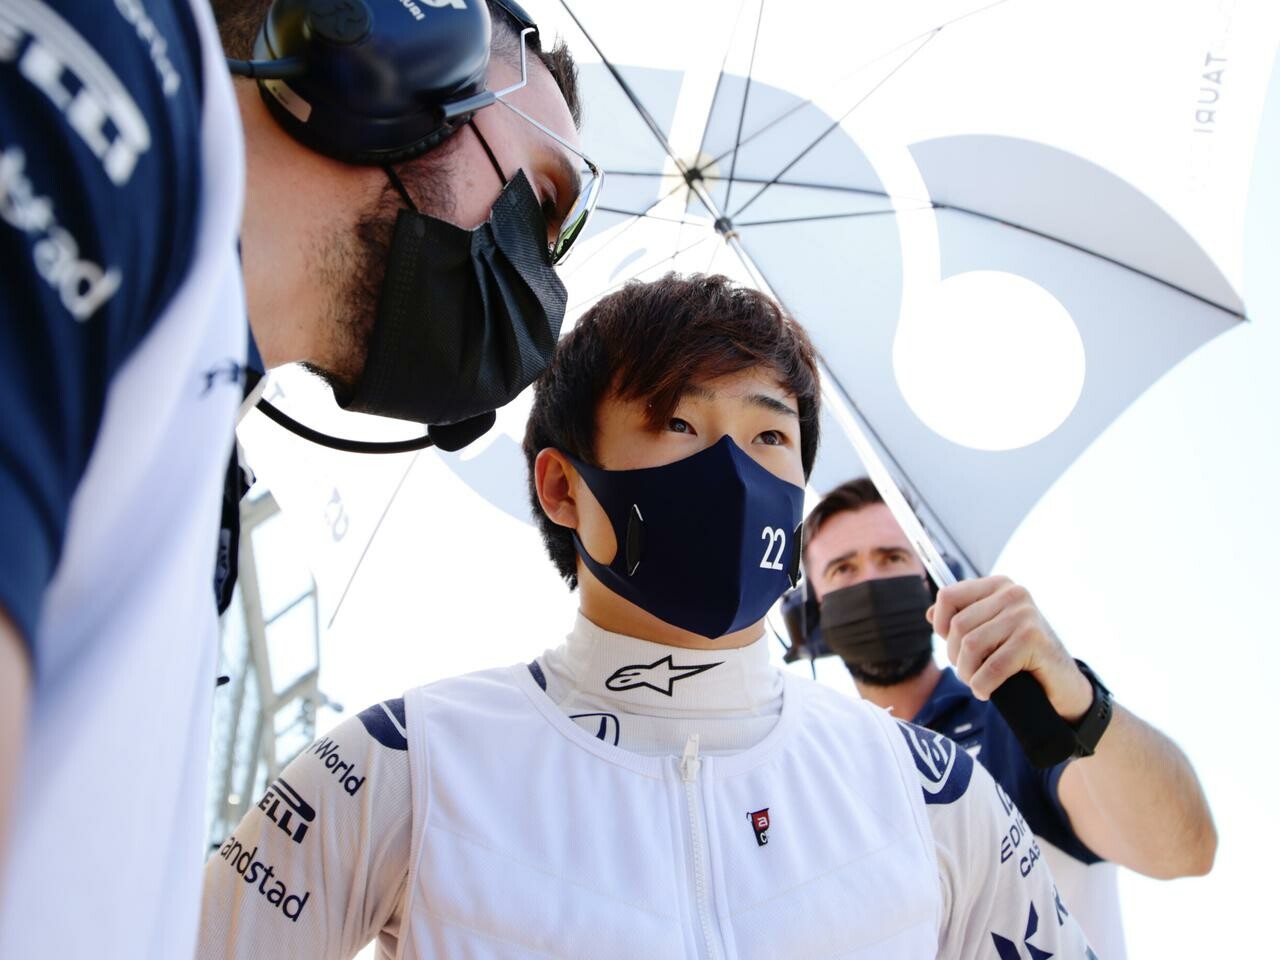 2021年F1第10戦、角田裕毅が今季4度目のポイント獲得「プランどおりのレースができた」【イギリスGP決勝】